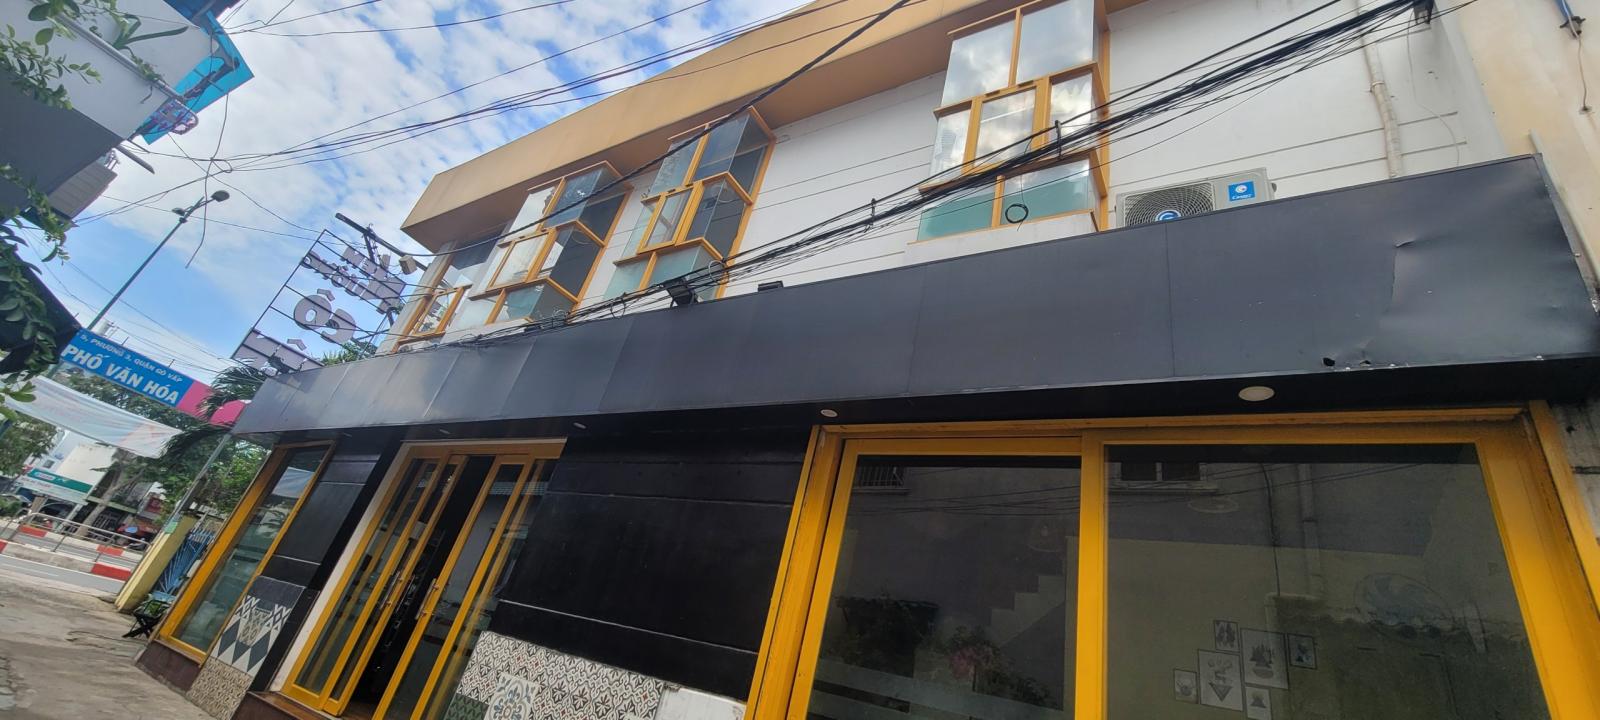 Bán căn nhà Mặt tiền Kinh doanh đường Phạm Văn Đồng, quận Gò Vấp giá 7,5 tỷ thương lượng